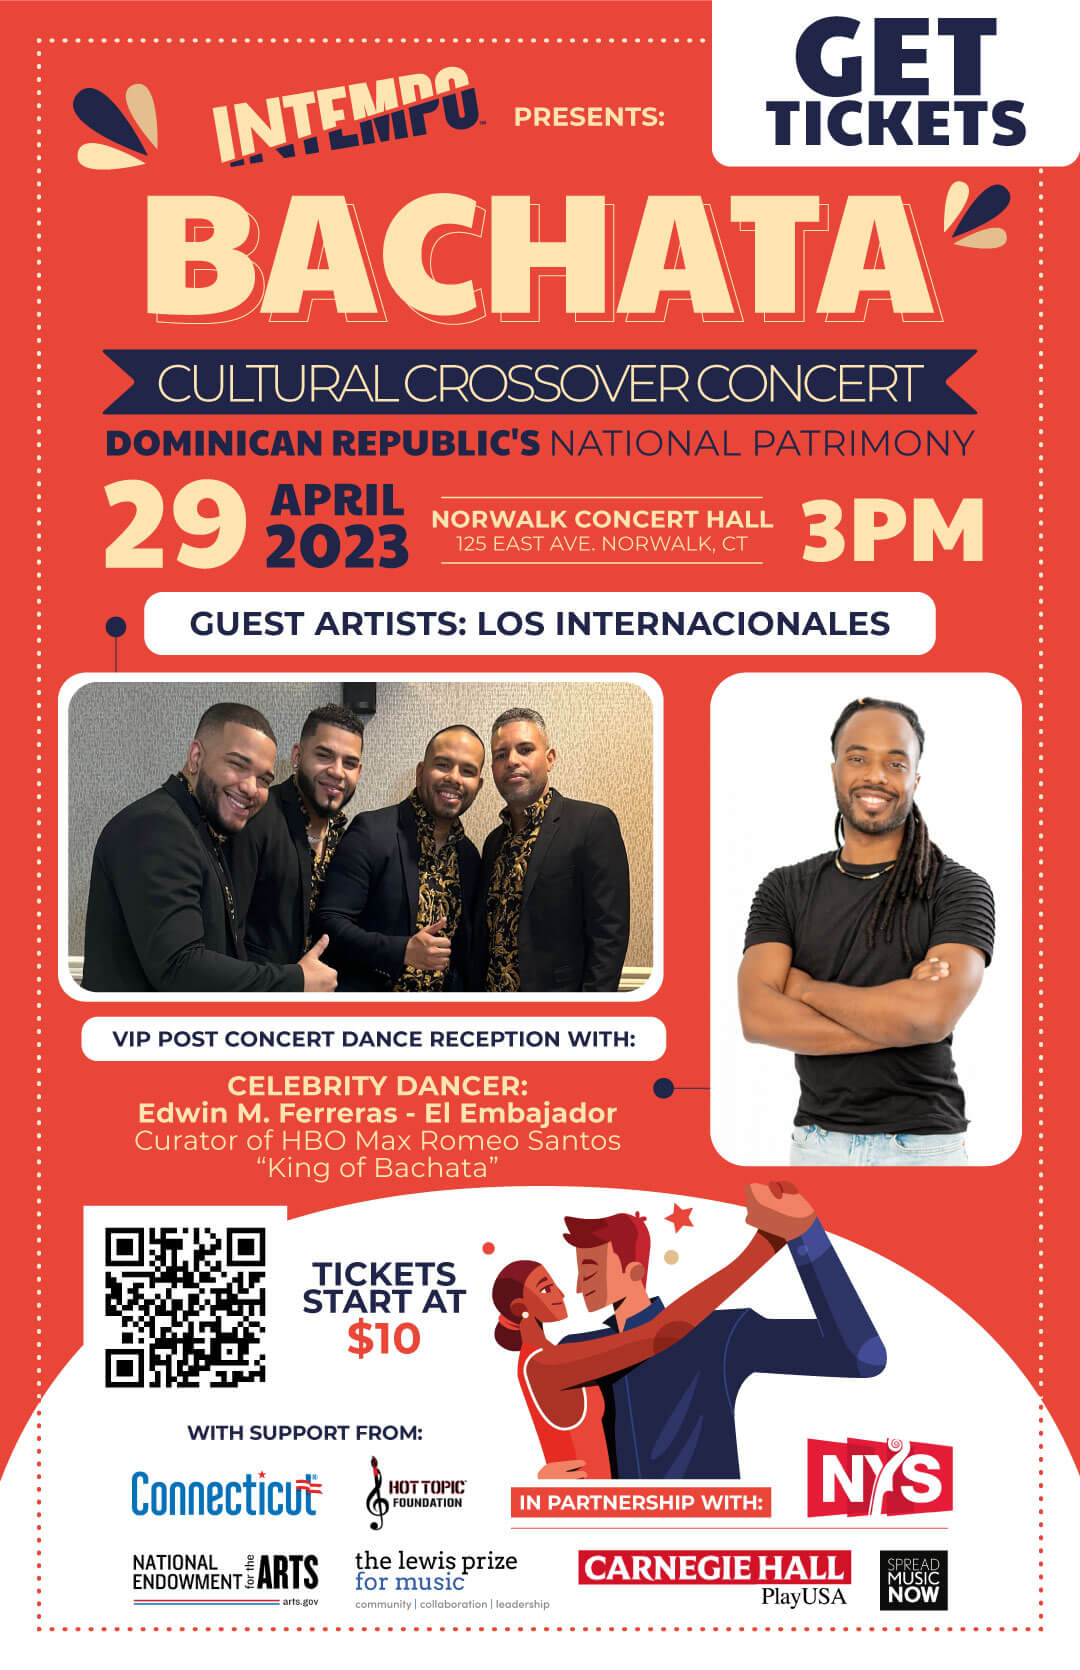 Intempo Cultural Crossover Concert: Bachata